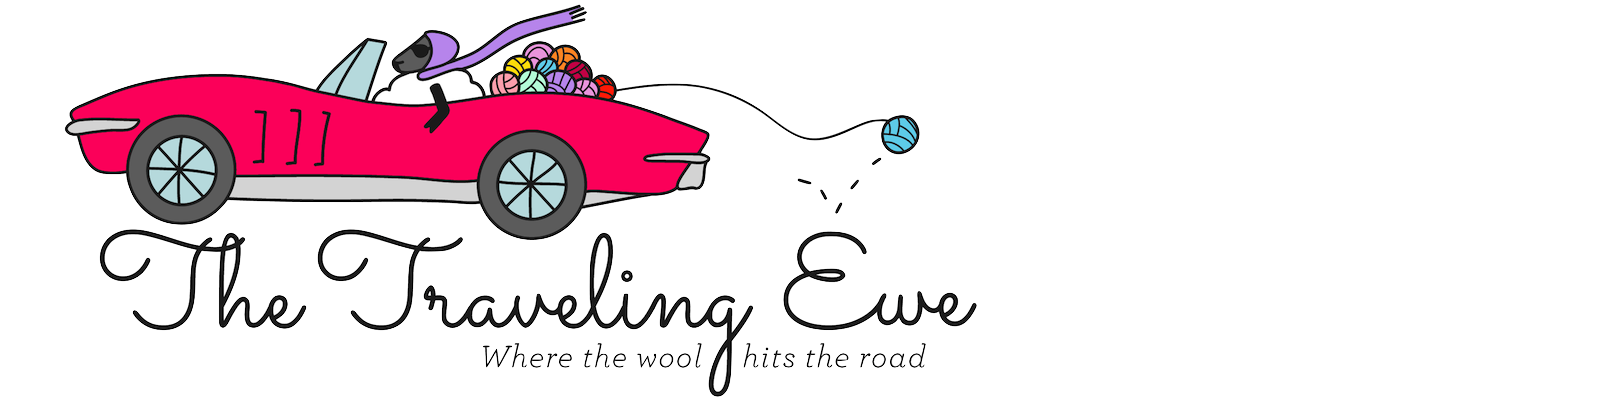 The Traveling Ewe logo